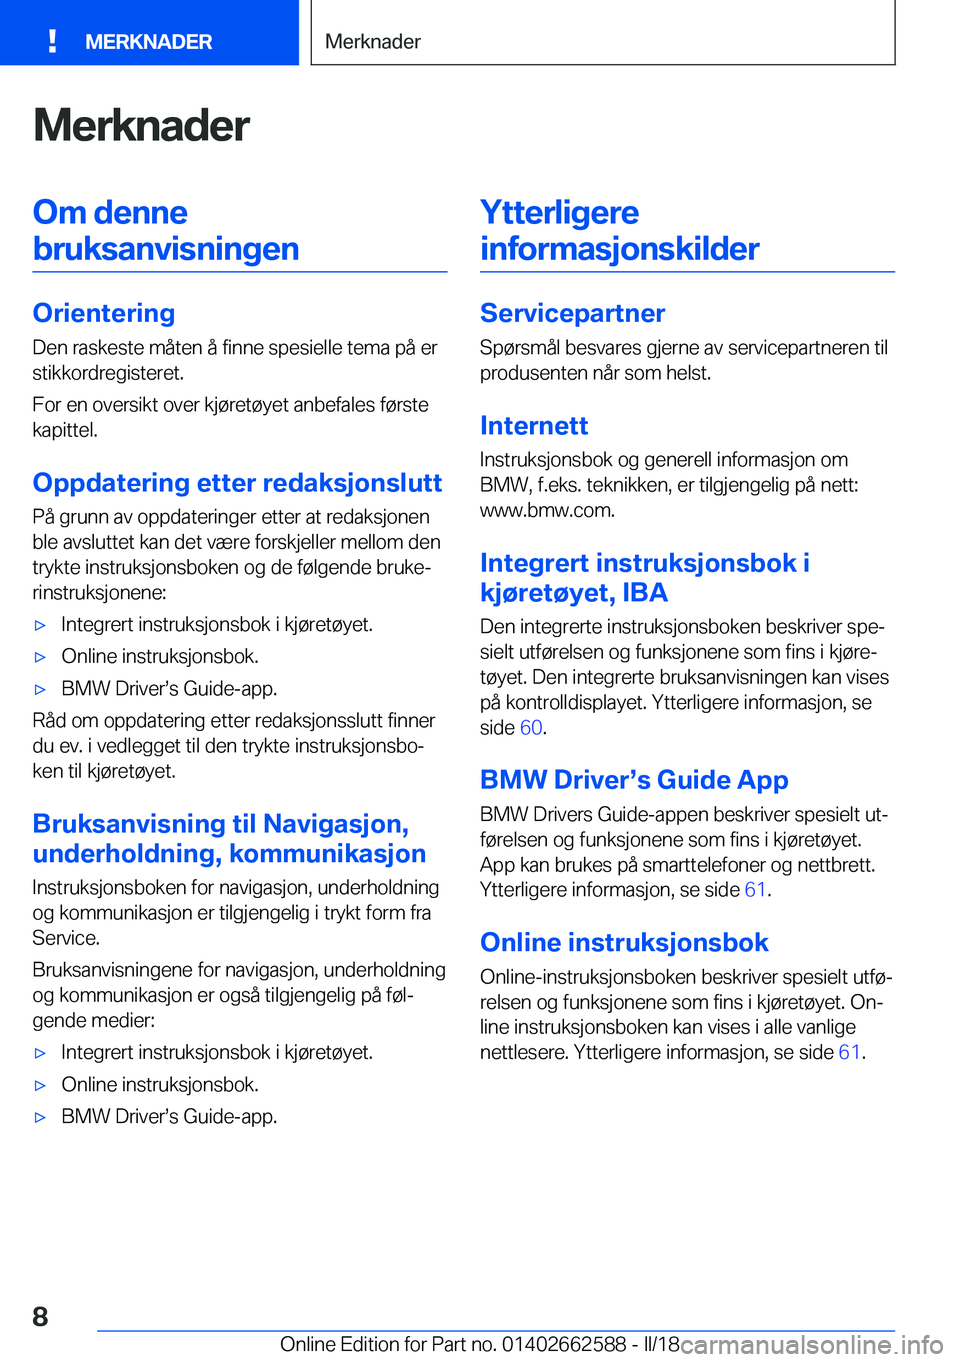 BMW M2 2018  InstruksjonsbØker (in Norwegian) �M�e�r�k�n�a�d�e�r�O�m��d�e�n�n�e�b�r�u�k�s�a�n�v�i�s�n�i�n�g�e�n
�O�r�i�e�n�t�e�r�i�n�g
�D�e�n� �r�a�s�k�e�s�t�e� �m�å�t�e�n� �å� �f�i�n�n�e� �s�p�e�s�i�e�l�l�e� �t�e�m�a� �p�å� �e�r �s�t�i�k�k�o